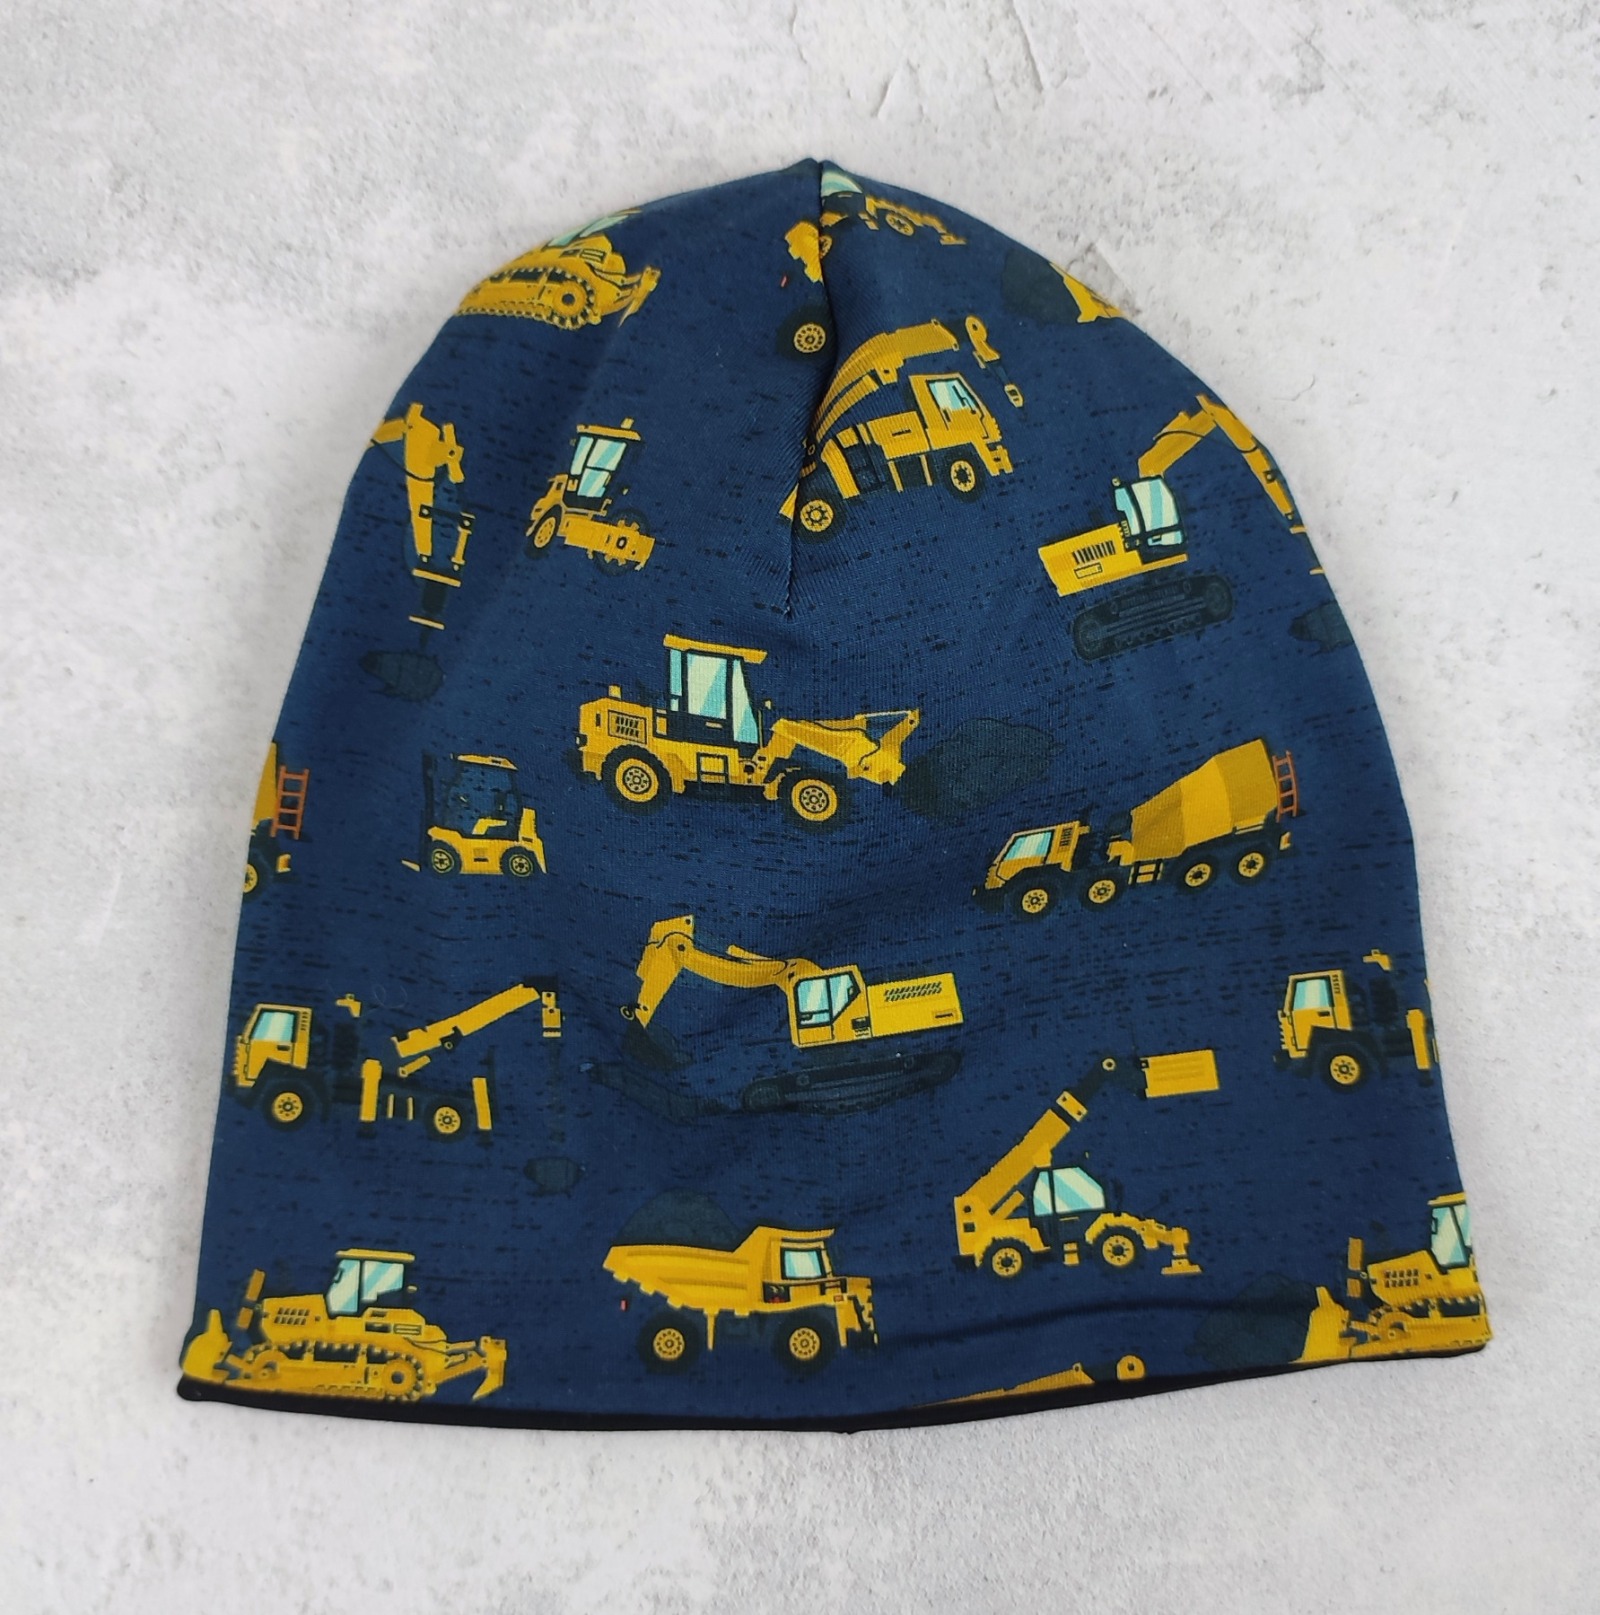 Beanie Baufahrzeuge auf dunkelblau - Mütze für Kinder aus Jersey - Größe ca 48 - 54 cm